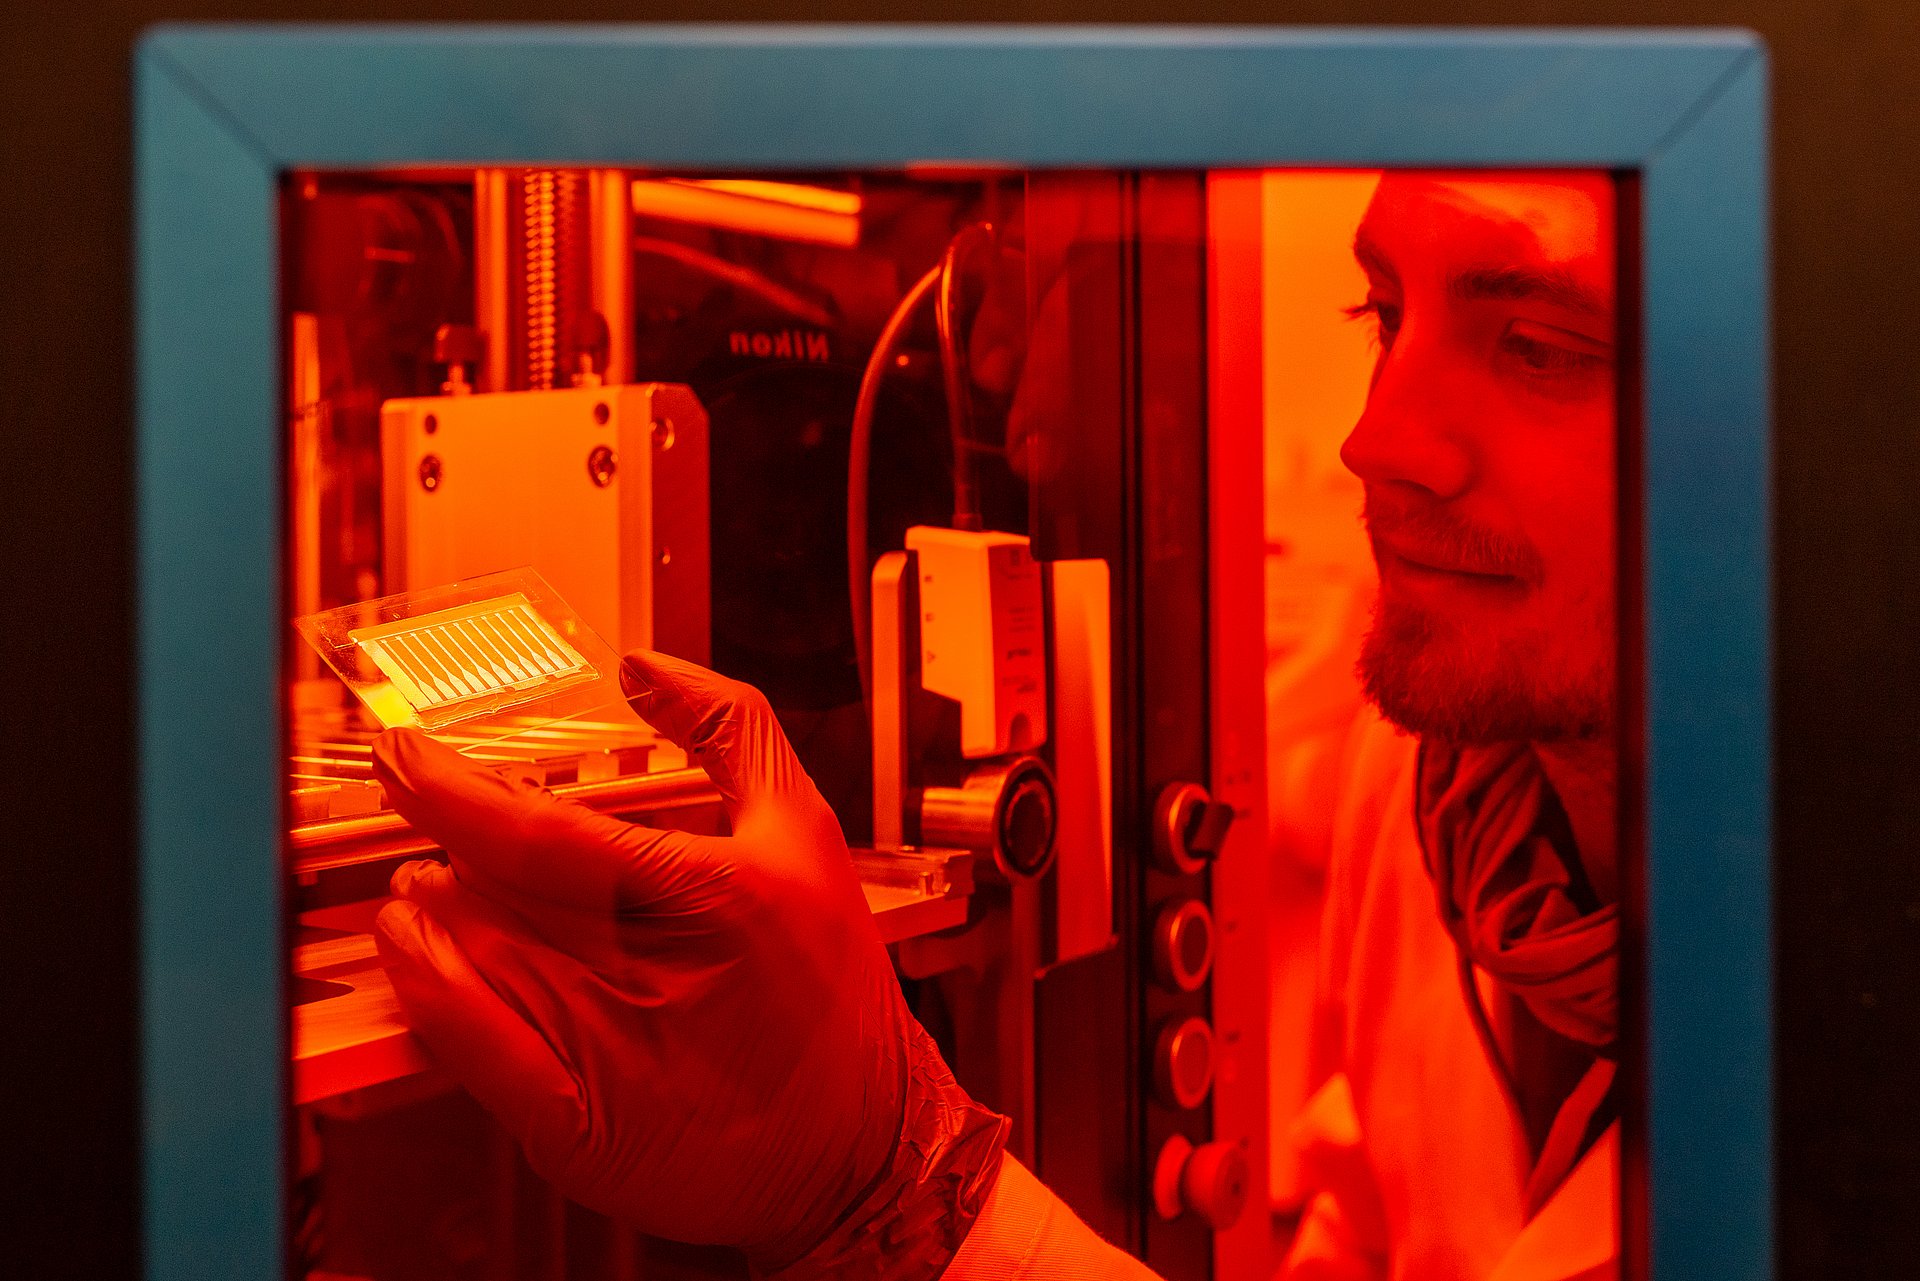 Mit Hilfe von Laserpulsen wird die aufgedampfte Goldschicht in leitfähige Bahnen strukturiert. Lukas Hiendlmeier entnimmt die strukturierten Exemplare aus dem Lasersystem.